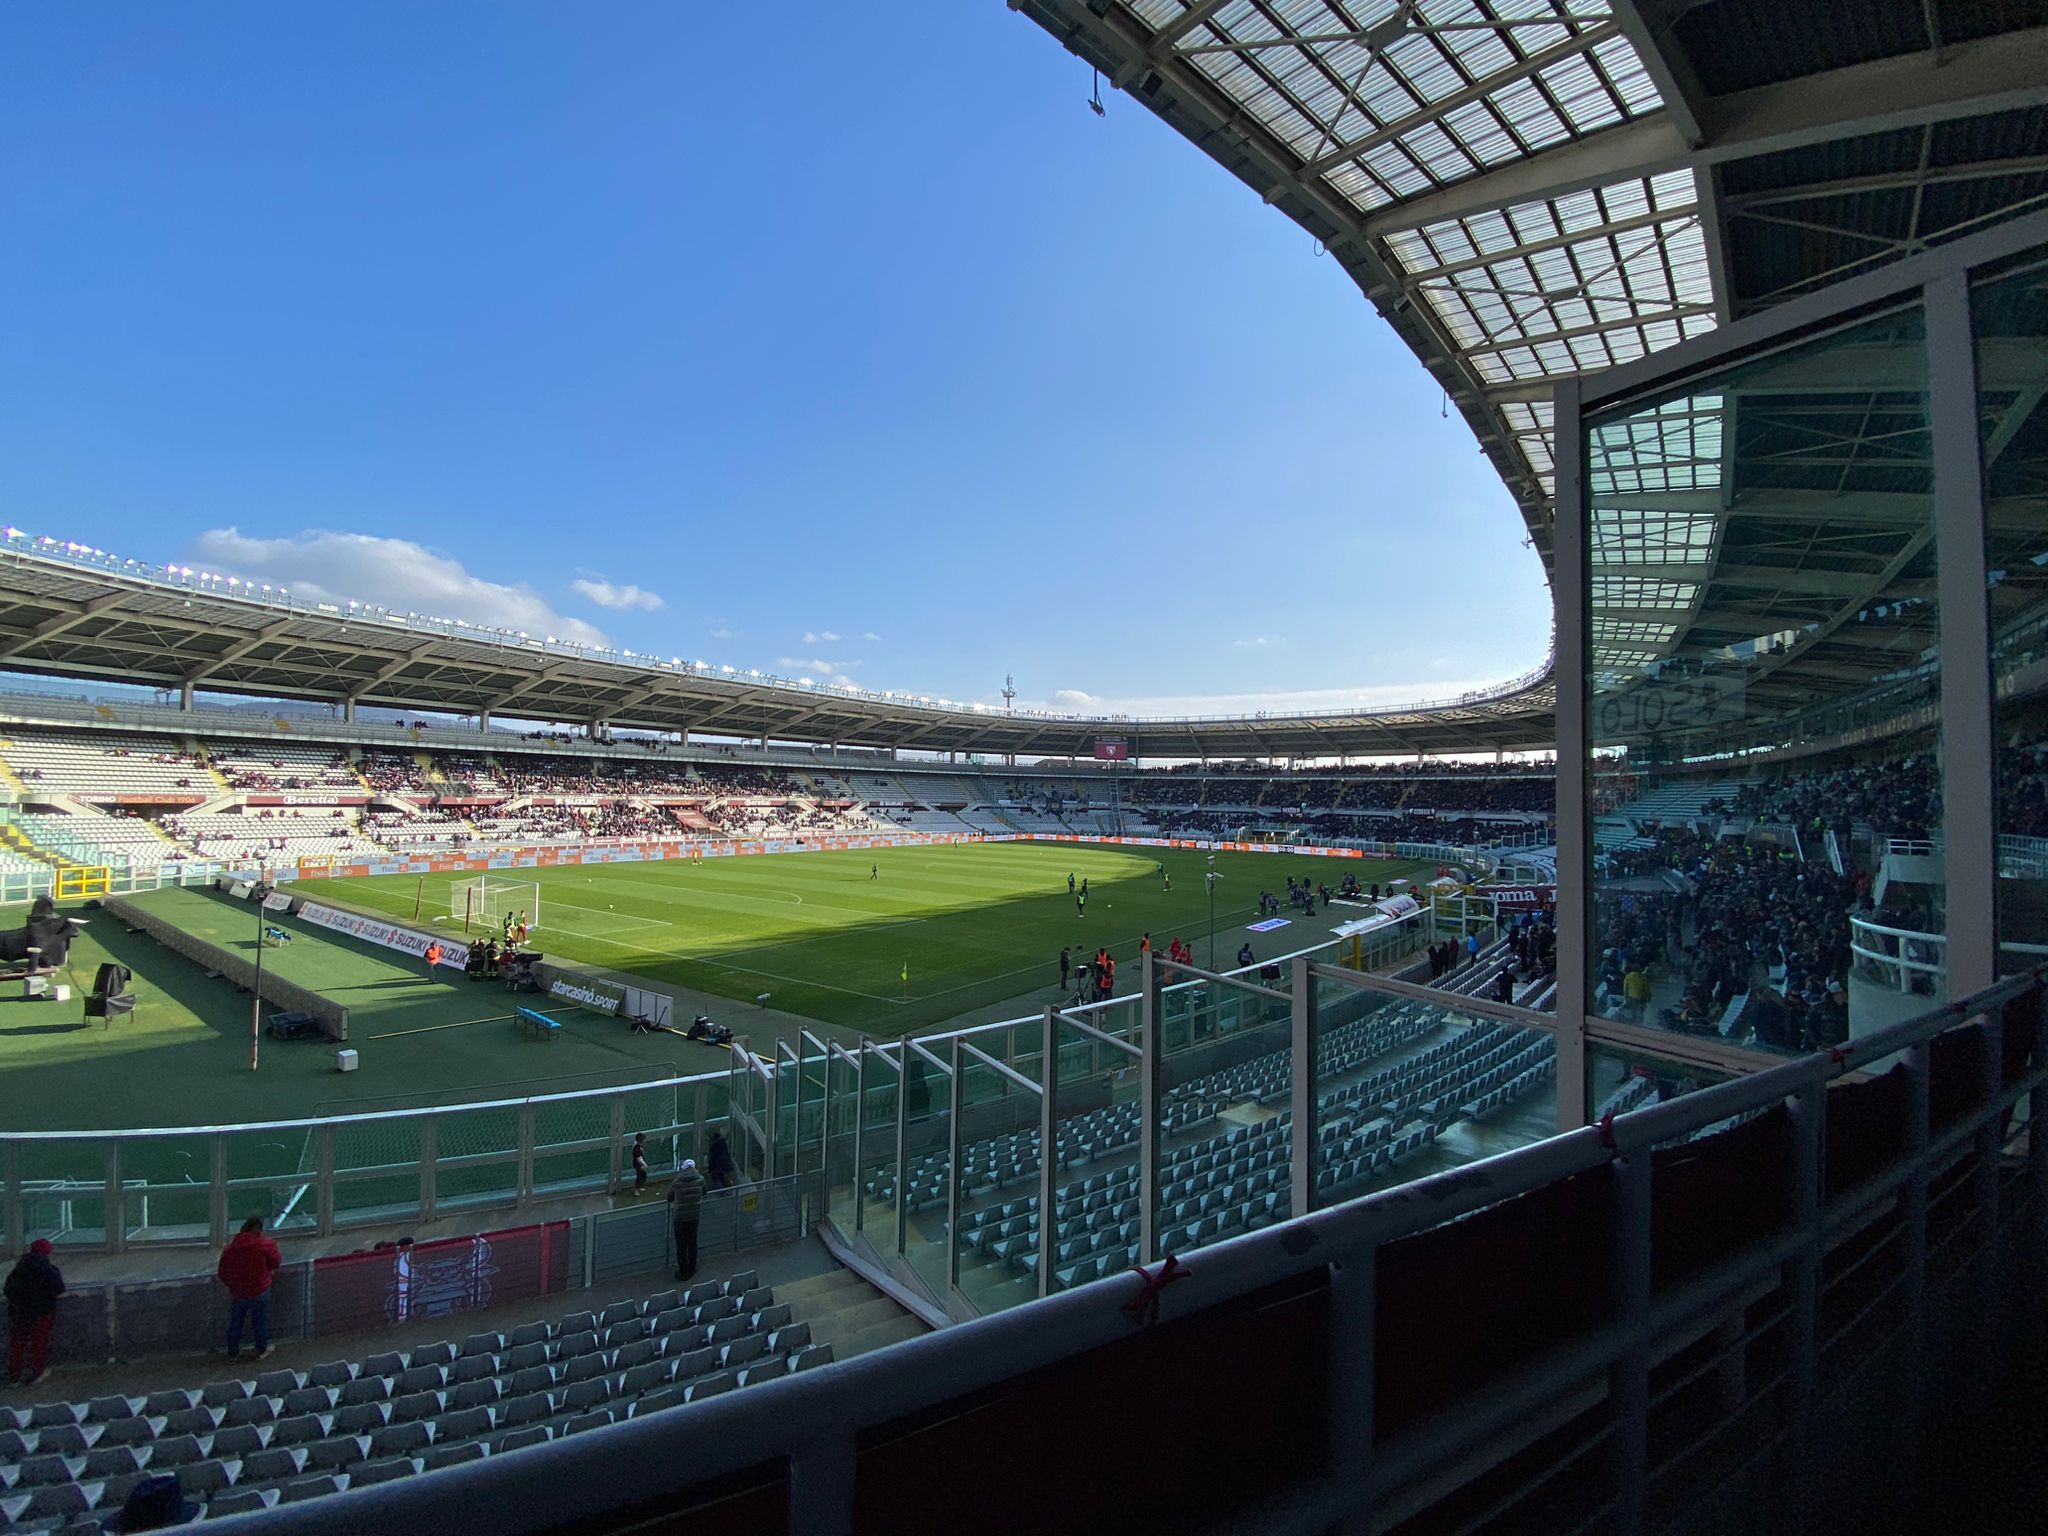 Stadio Olimpico di Torino alle 14.47 prima di Torino - Udinese (domenica 5 febbraio 23)